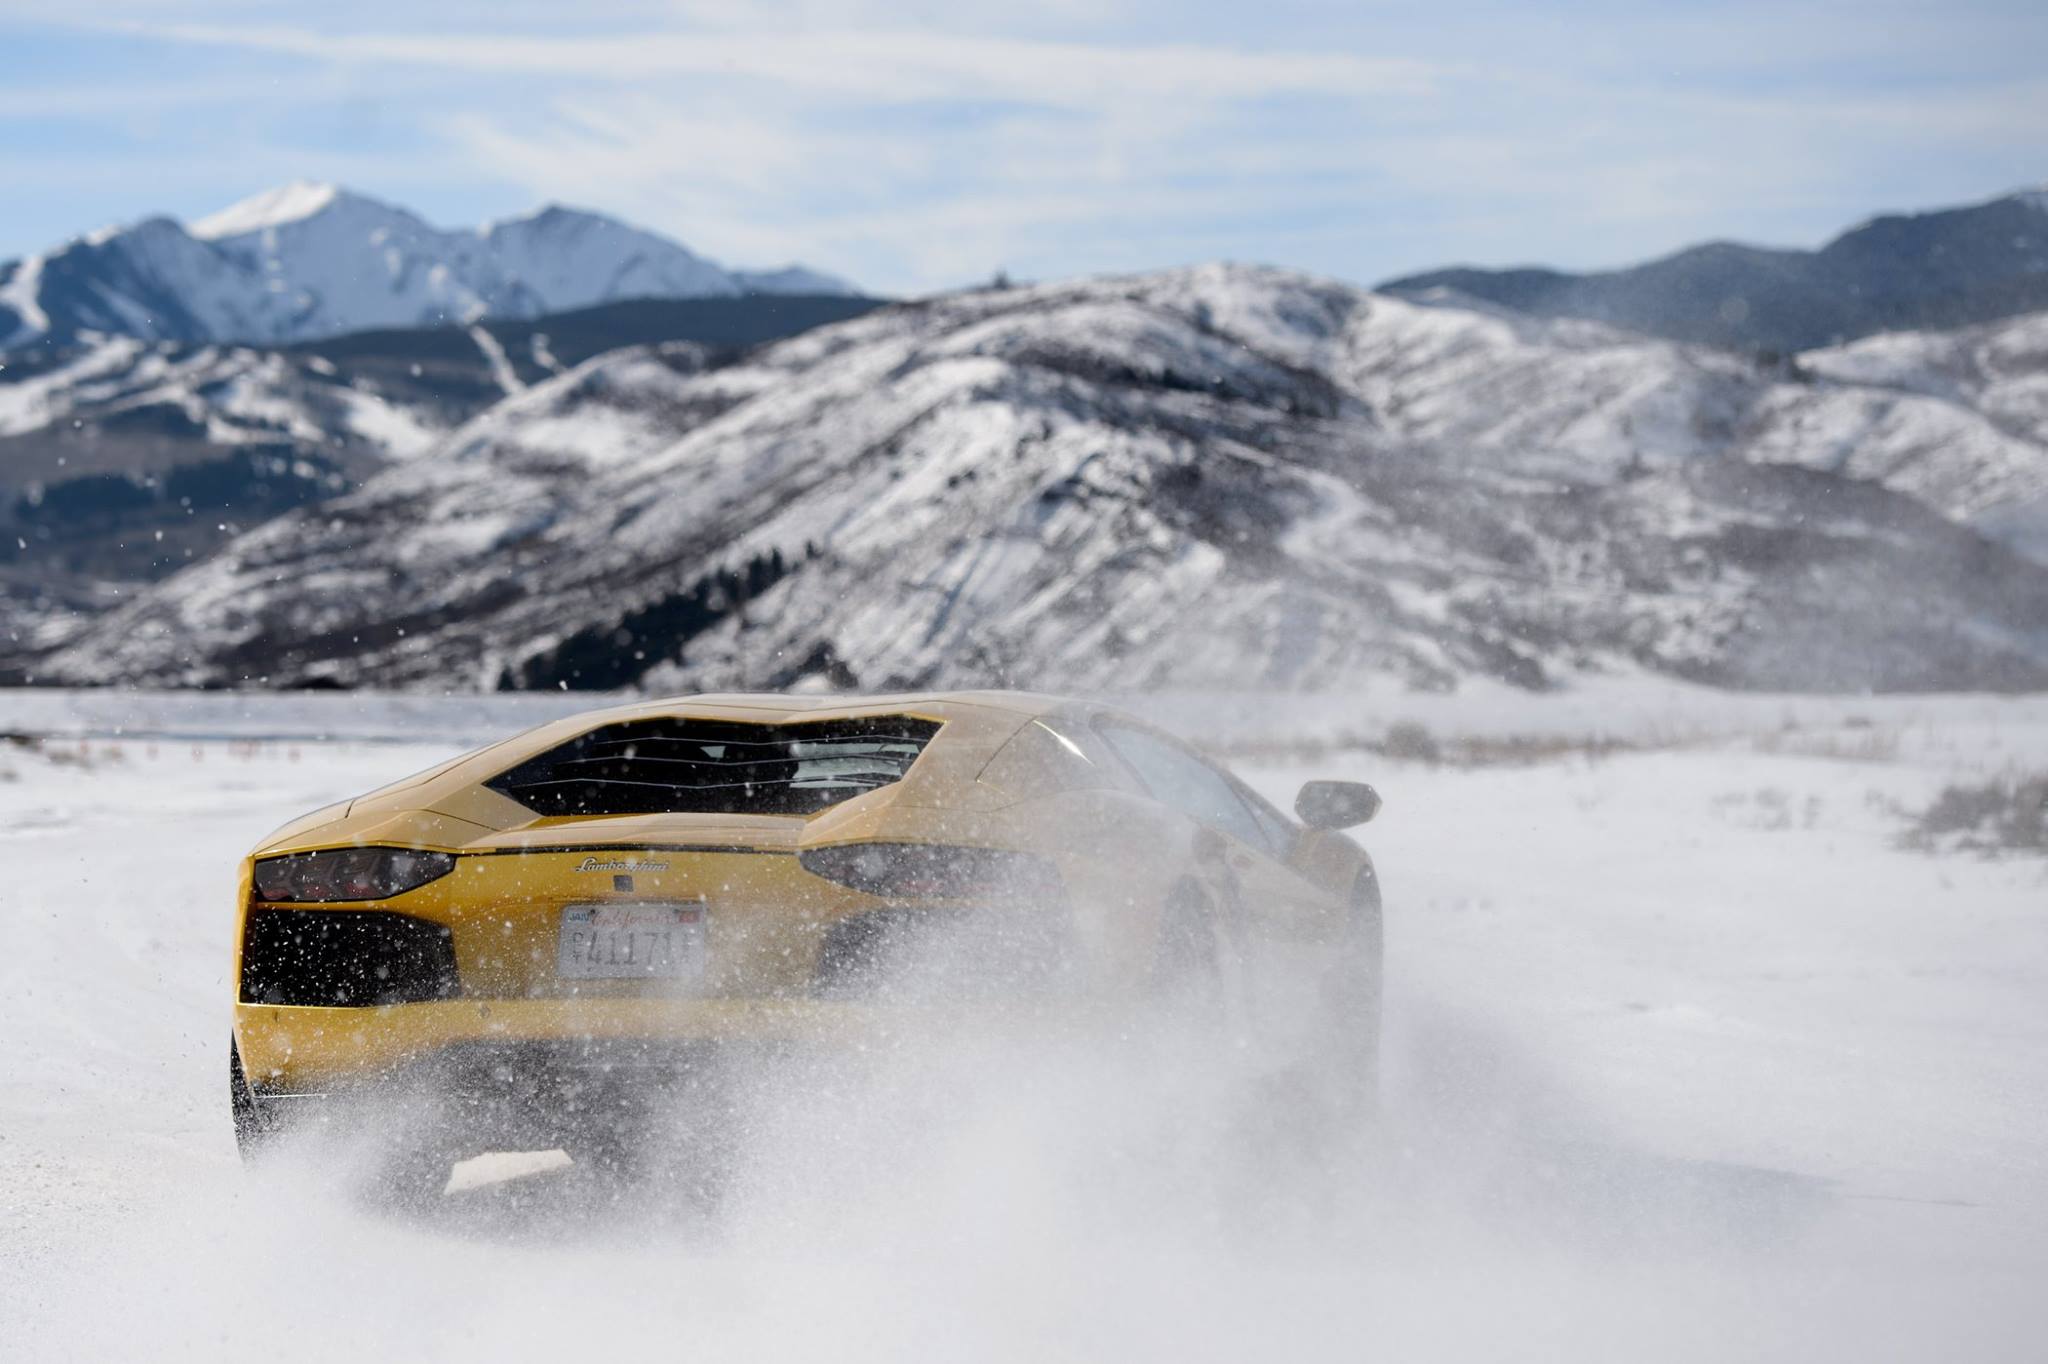 Основные моменты 2016 Lamborghini Winter Accademia